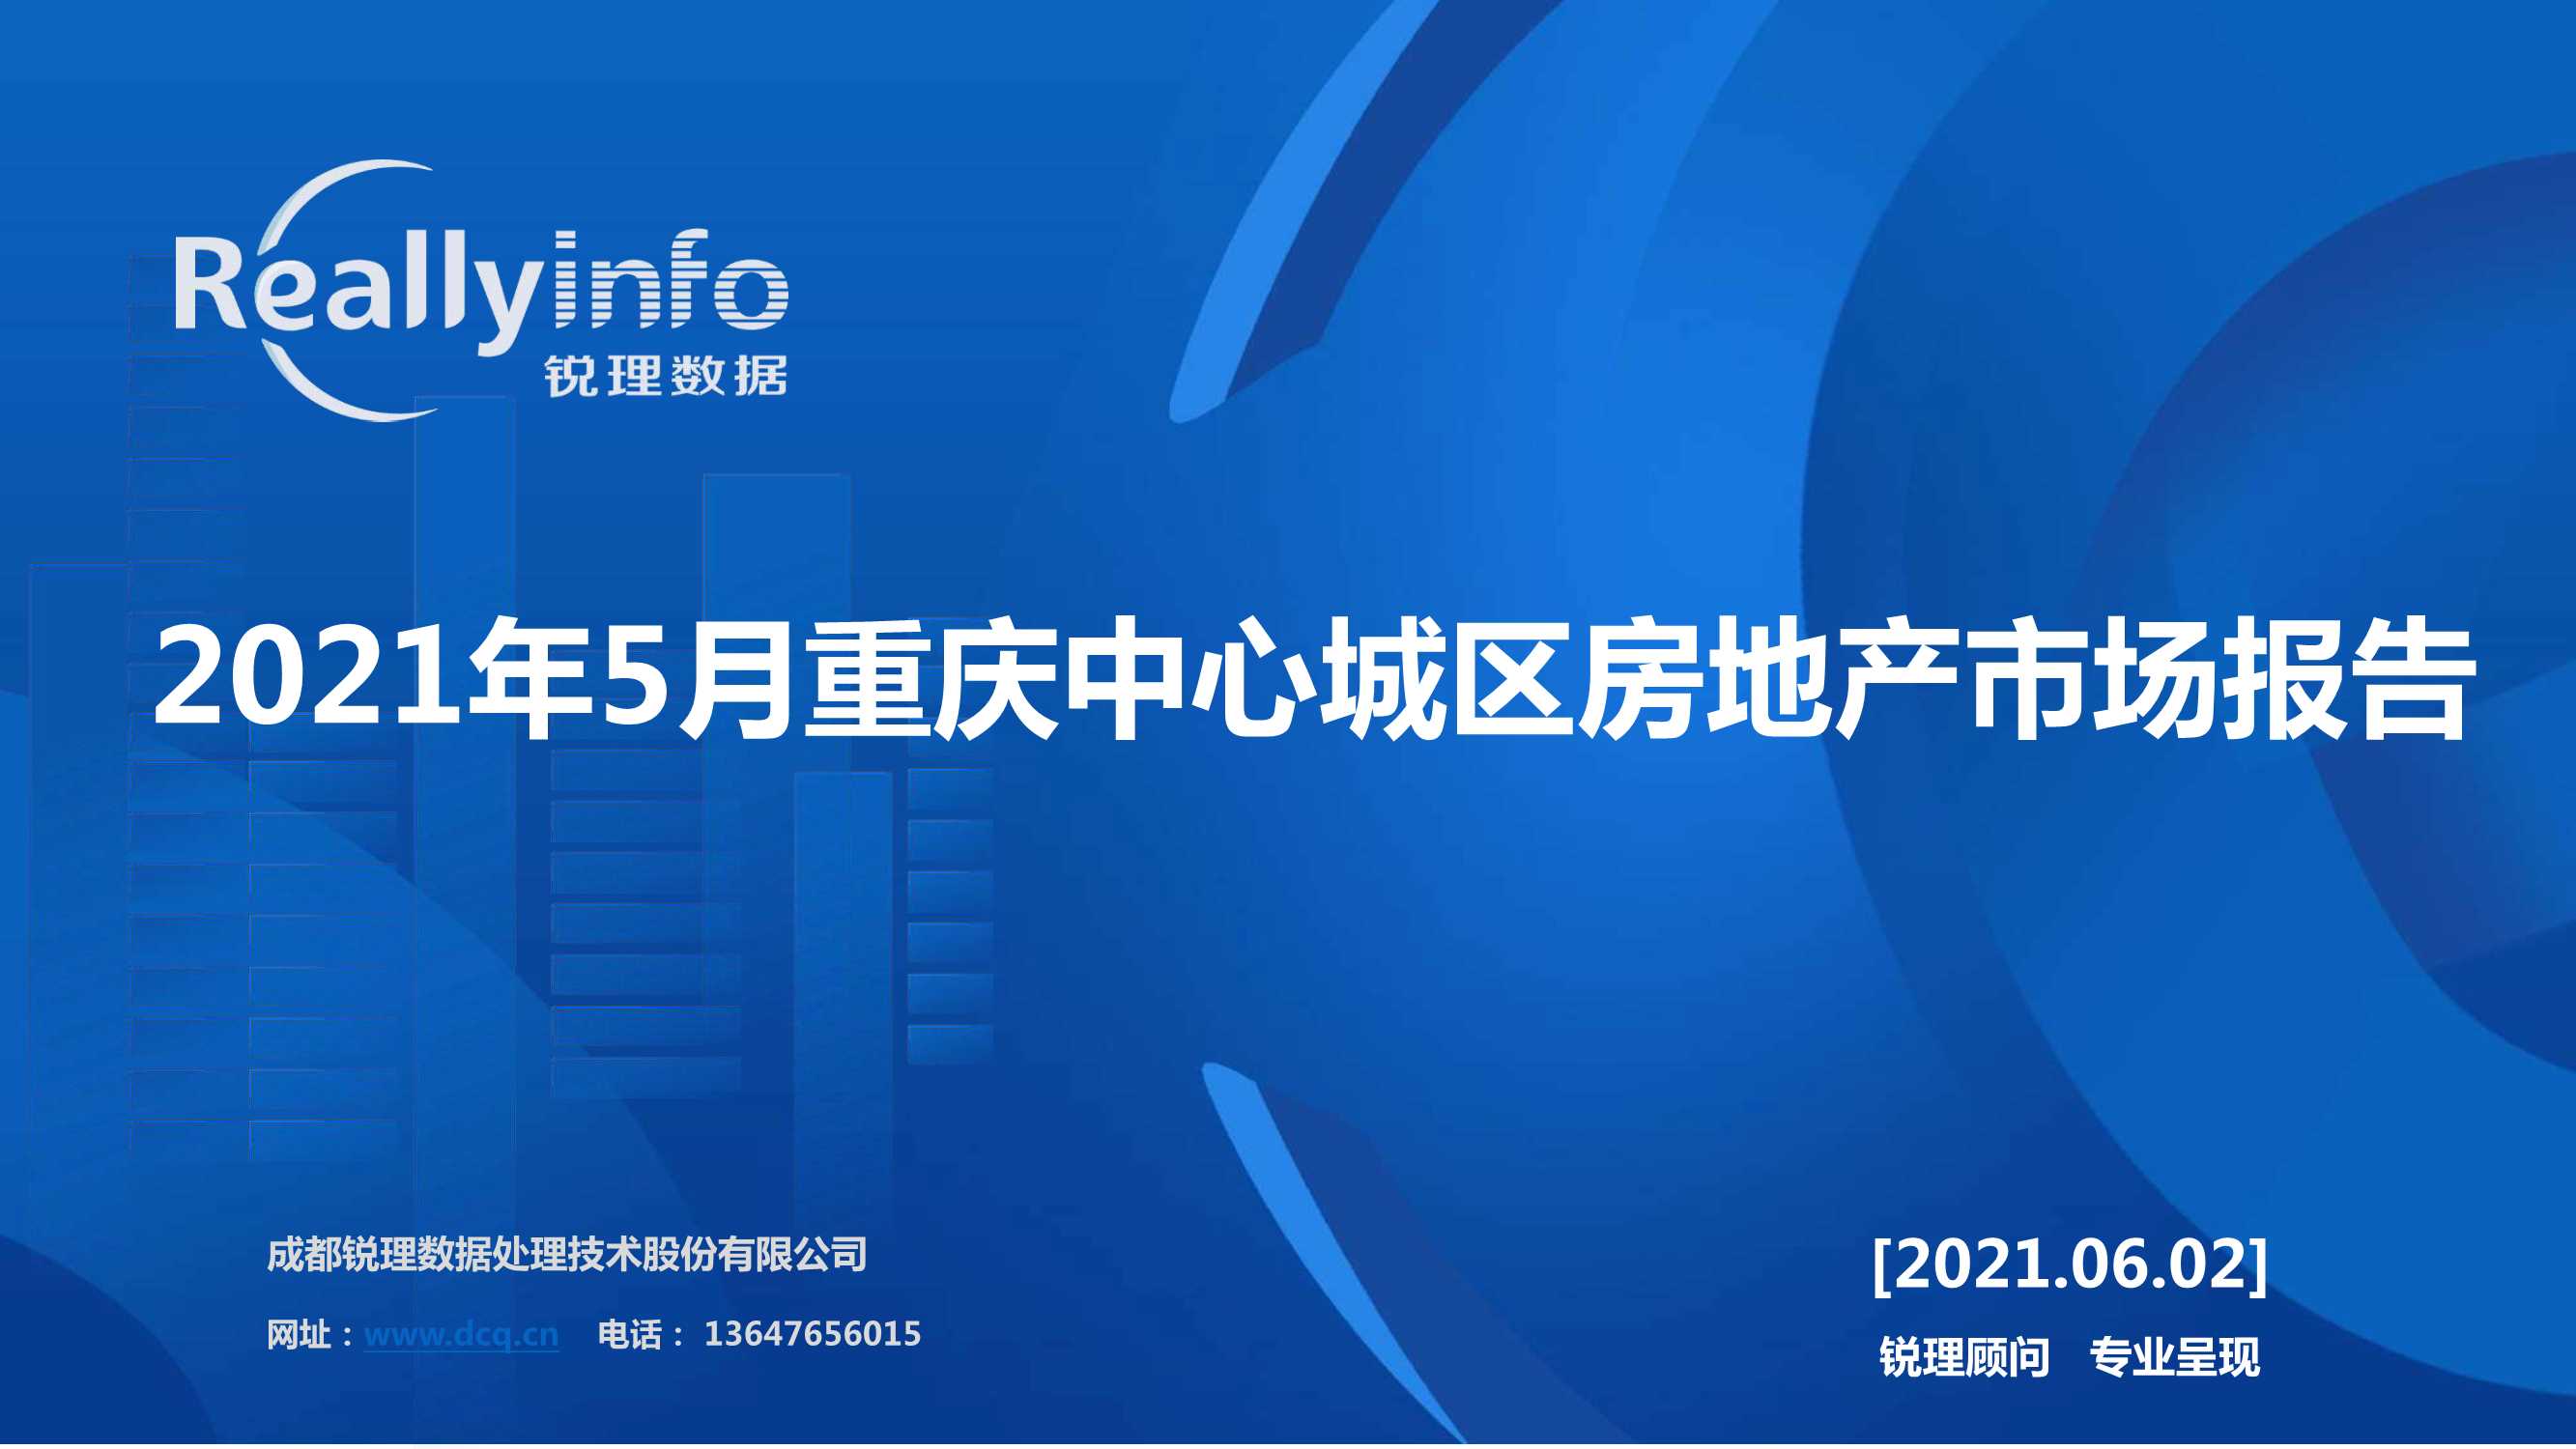 锐理数据-2021年5月重庆中心城区房地产市场报告-2021.06-44页